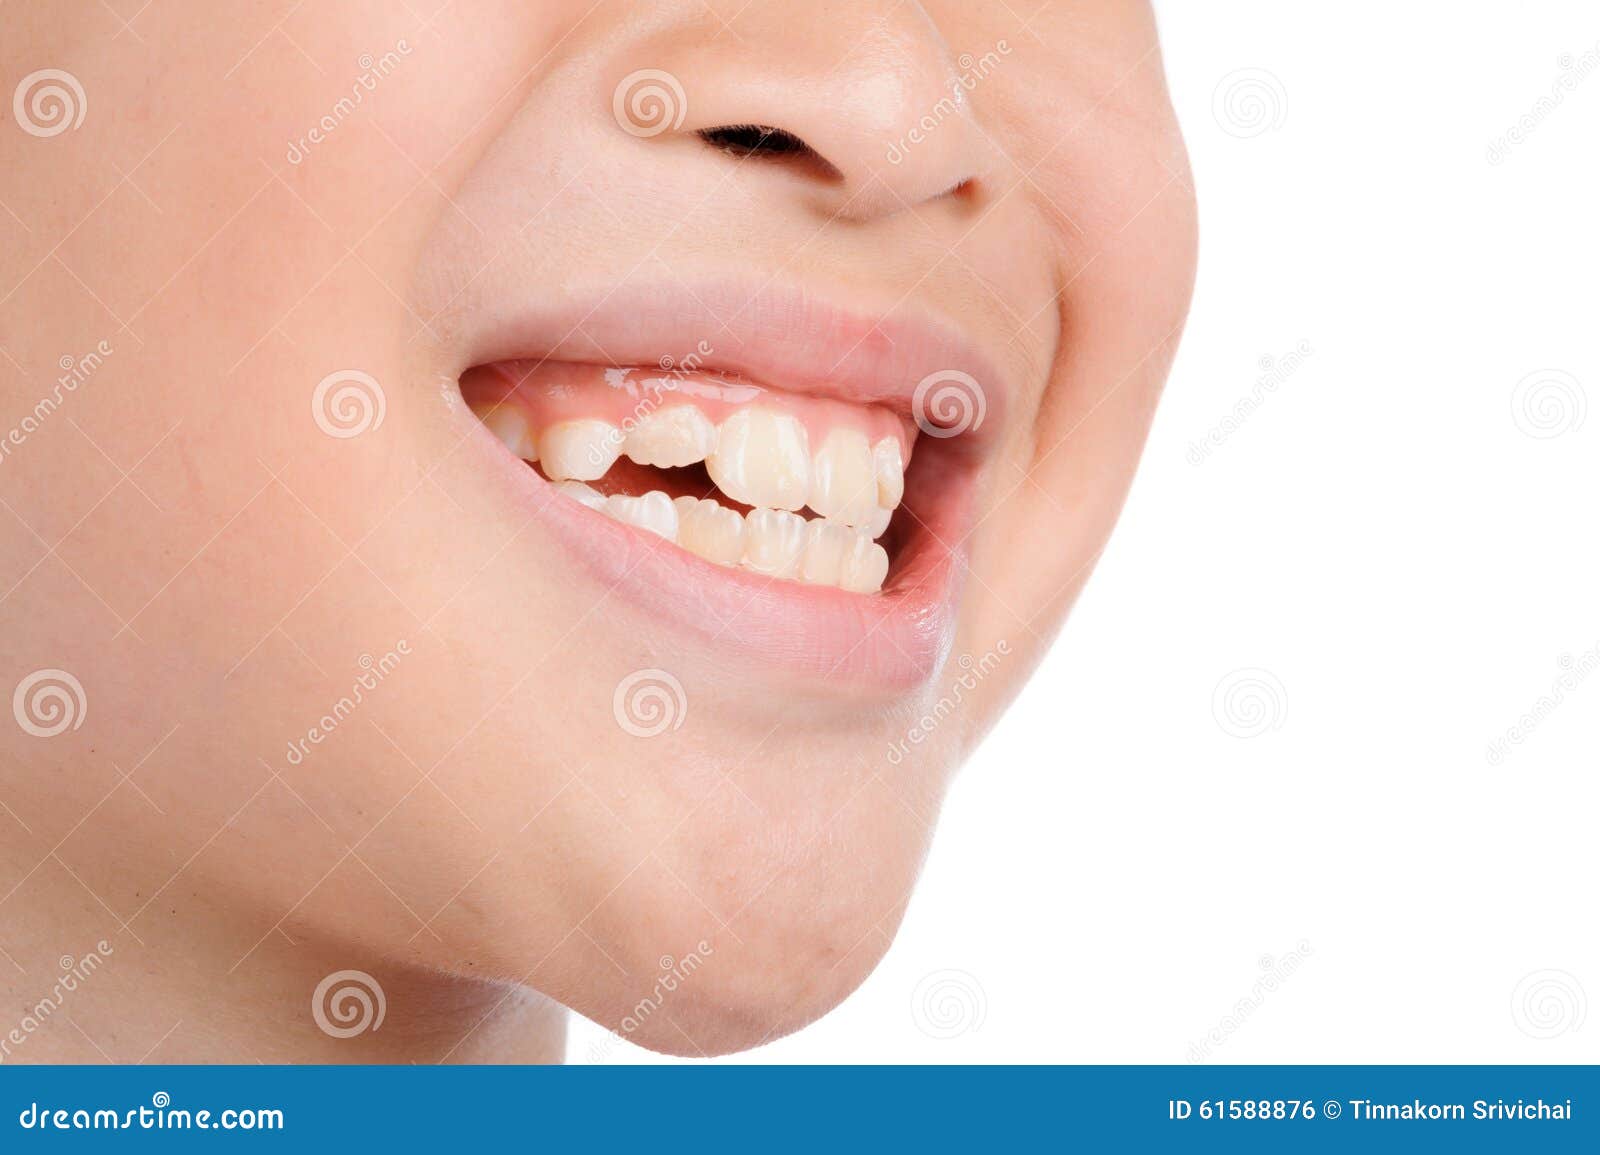 smile teeth kids